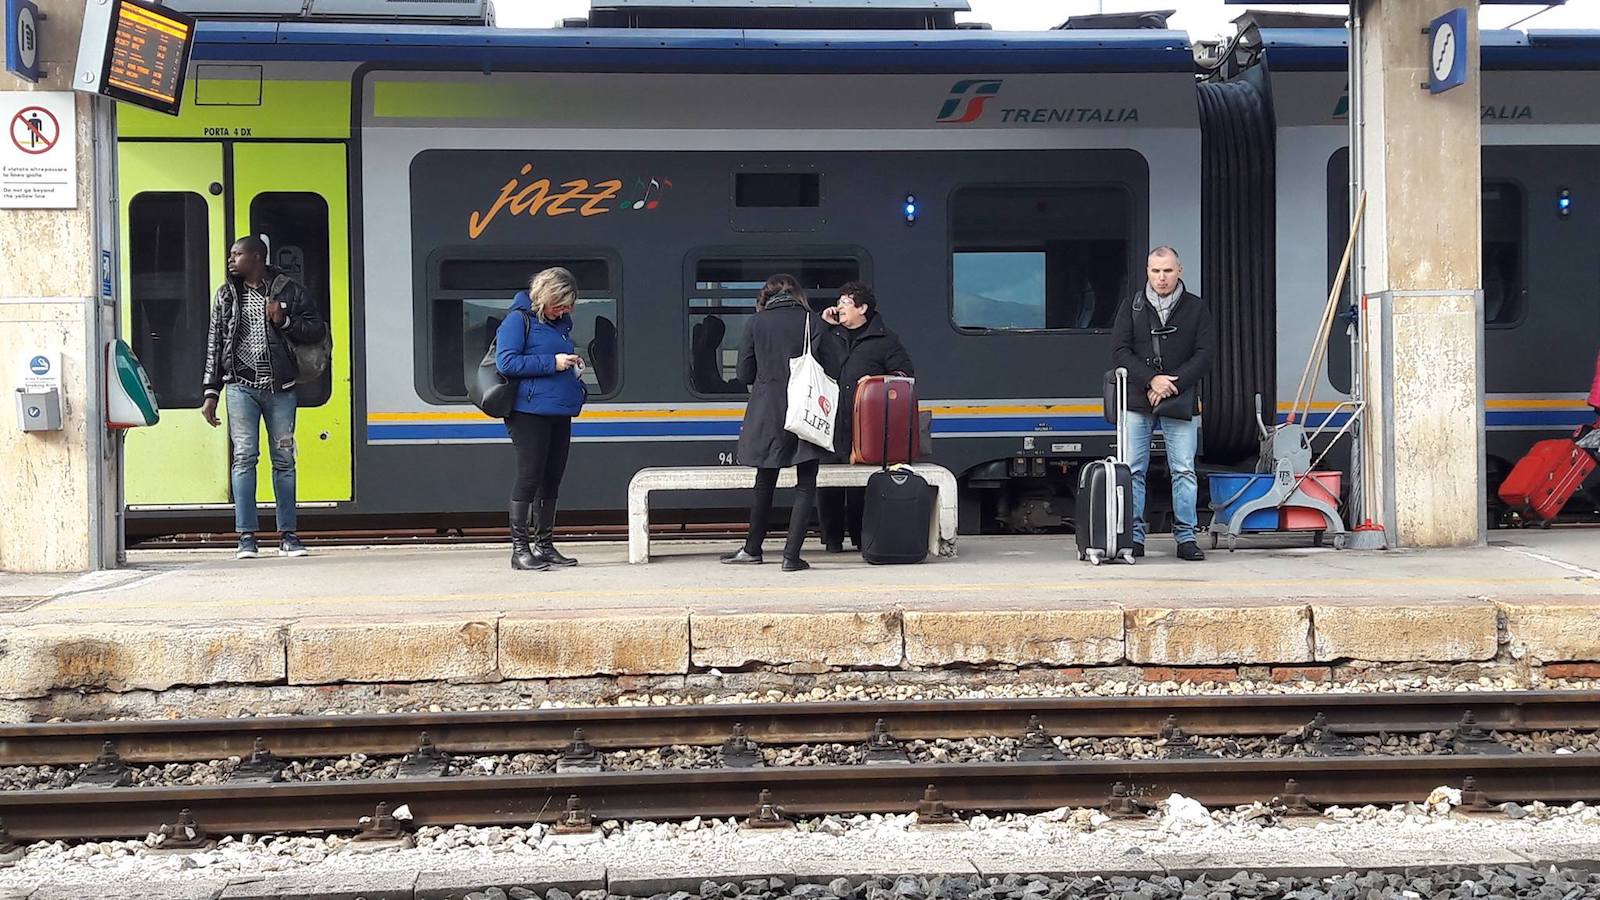 Національне сполучення в Італії, або Чи може потяг обігнати літак?